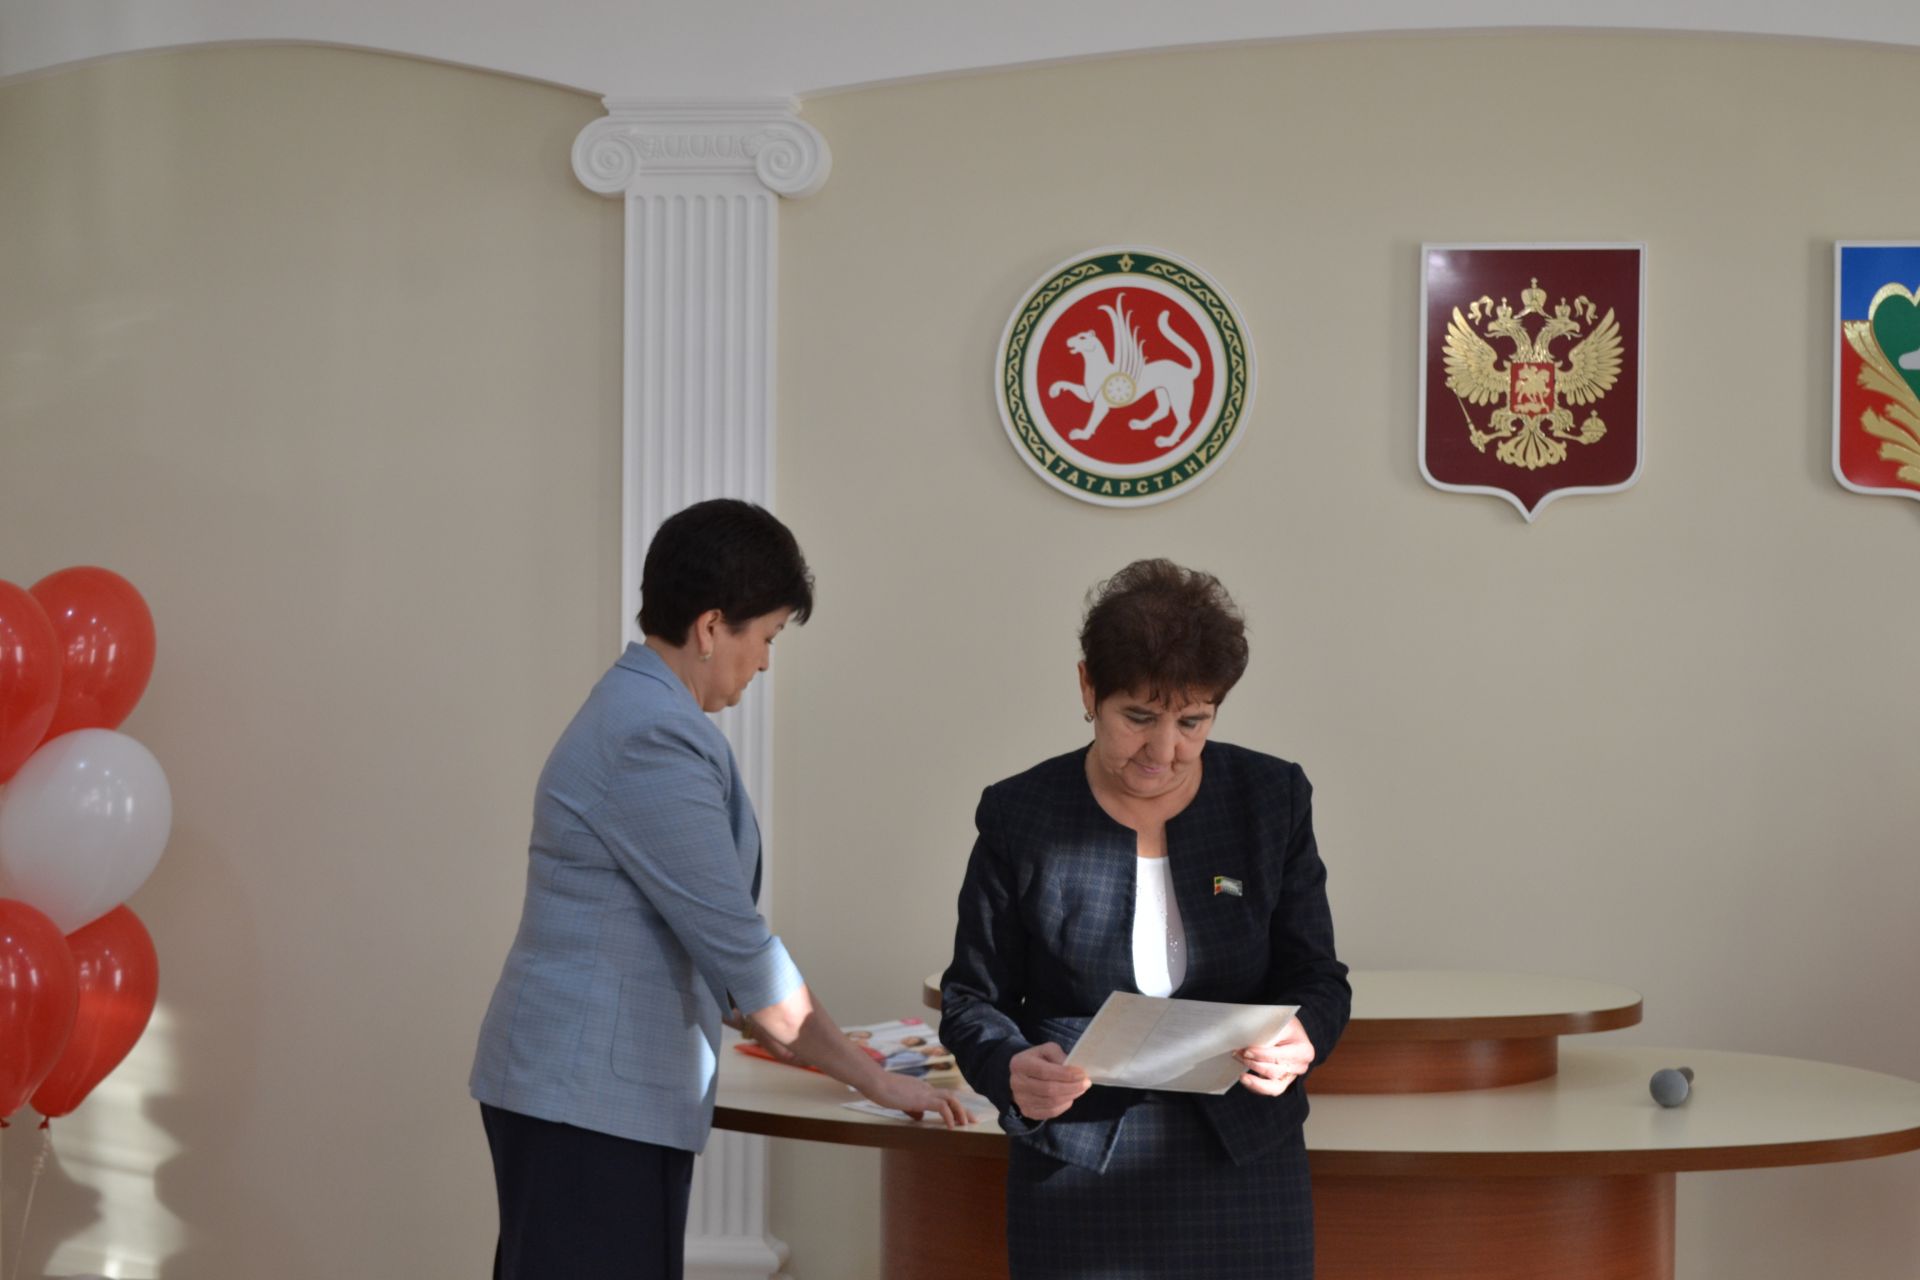 В преддверии Дня матери восемь семей из Кукморского района получили сертификаты на маткапитал